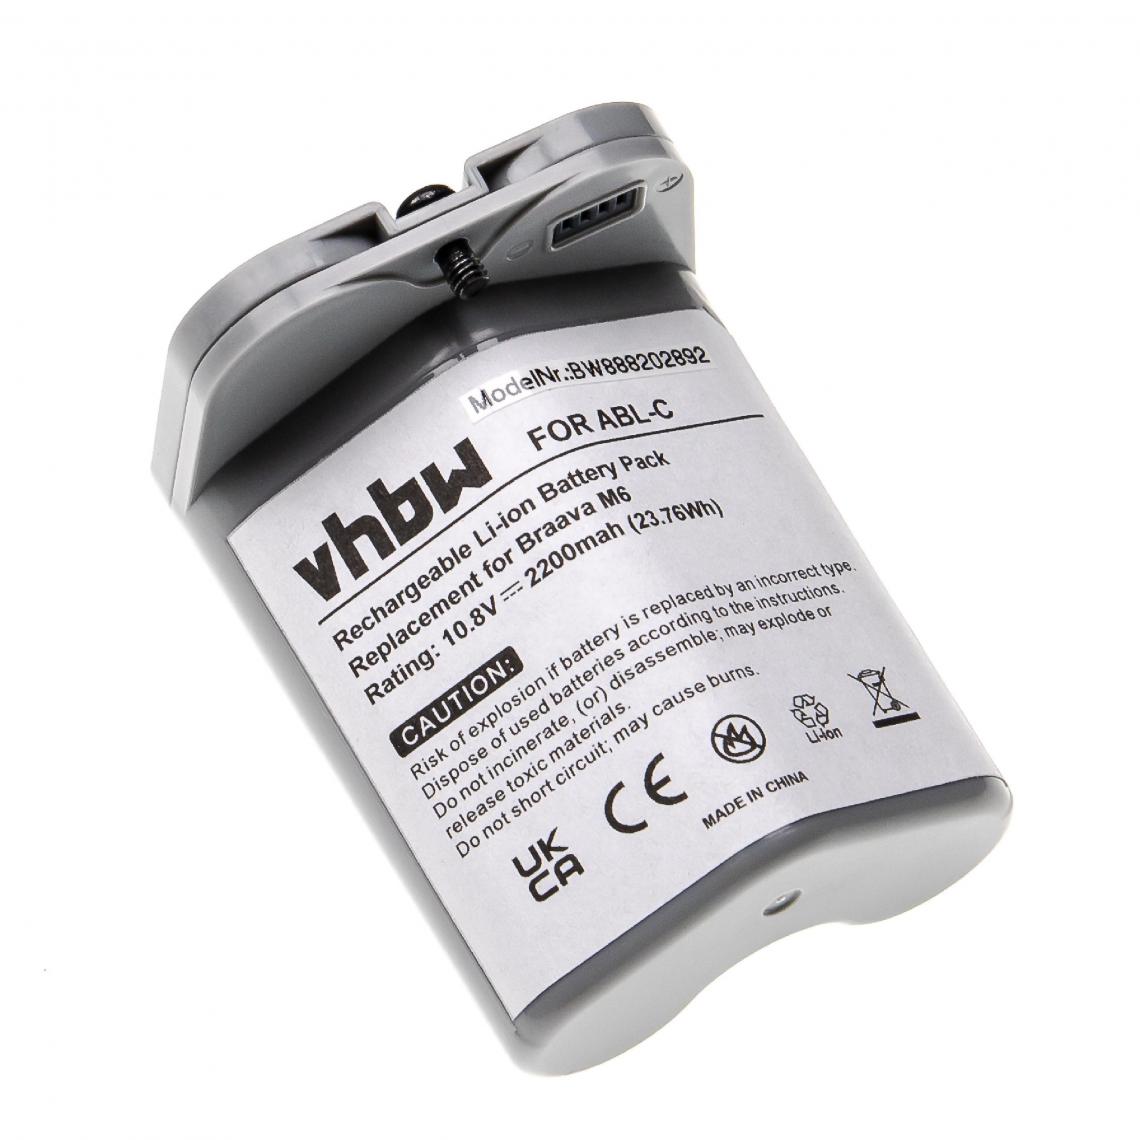 Vhbw - vhbw Batterie compatible avec iRobot Braava Jet M6 aspirateur, robot électroménager (2200mAh, 10,8V, Li-ion) - Accessoire entretien des sols